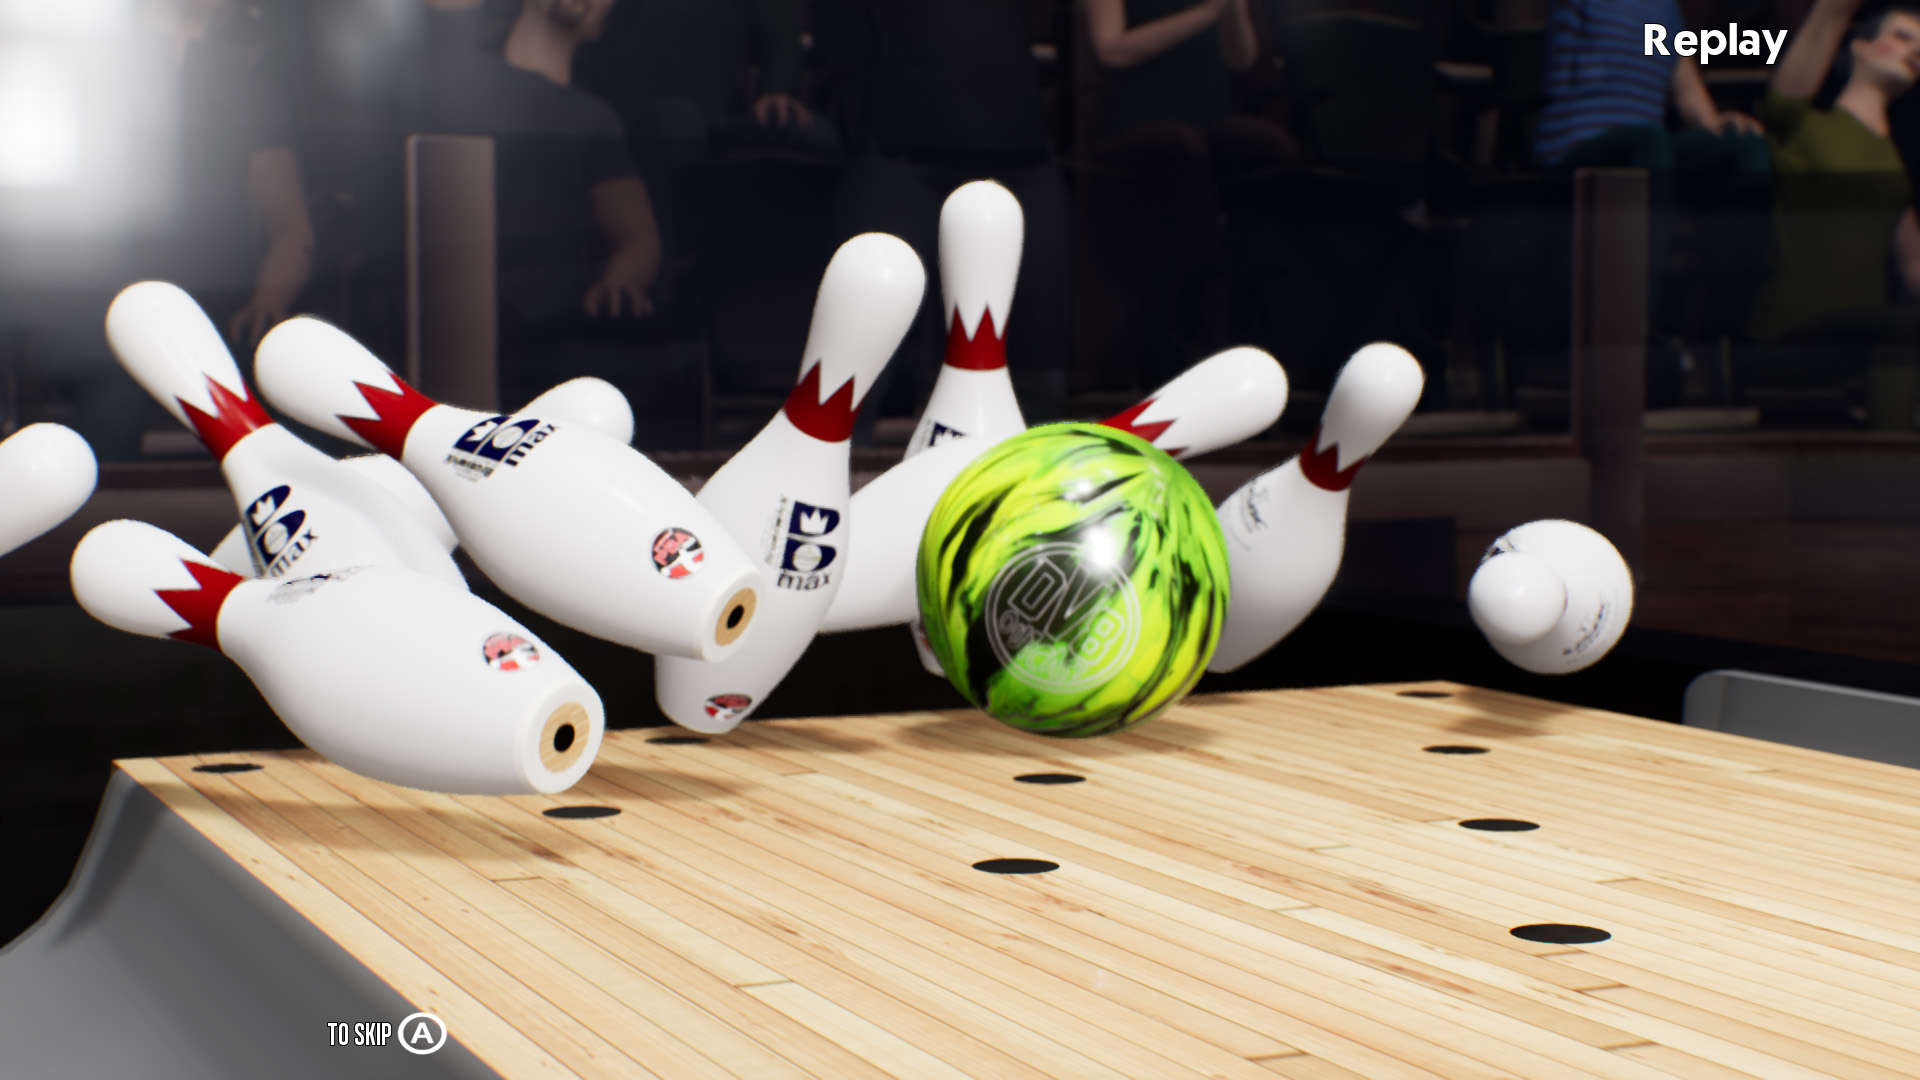 PBA Pro Bowling 2023